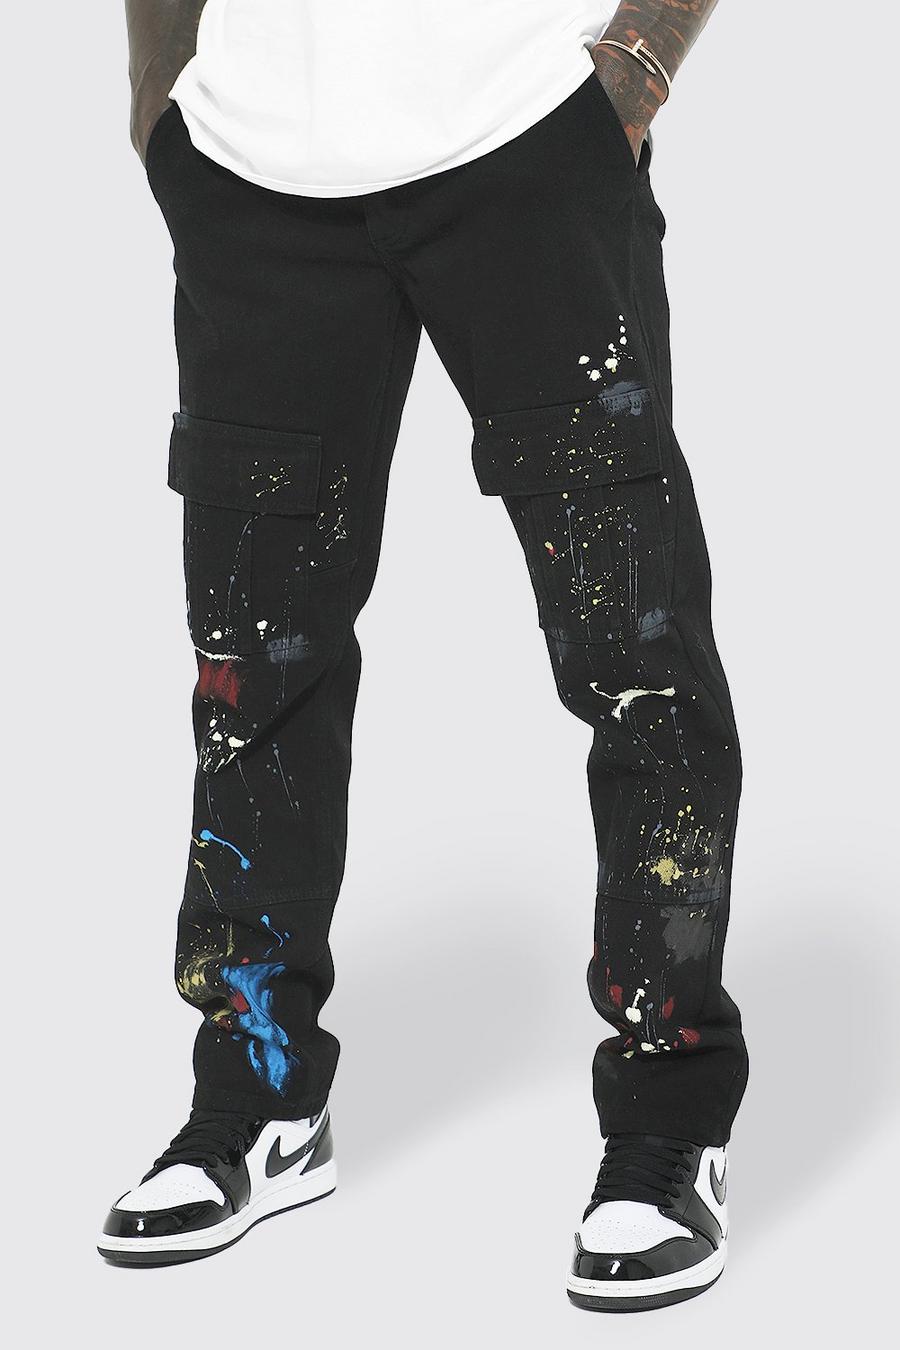 שחור negro מכנסי דגמ'ח טוויל בגזרה ישרה עם כתמי צבע